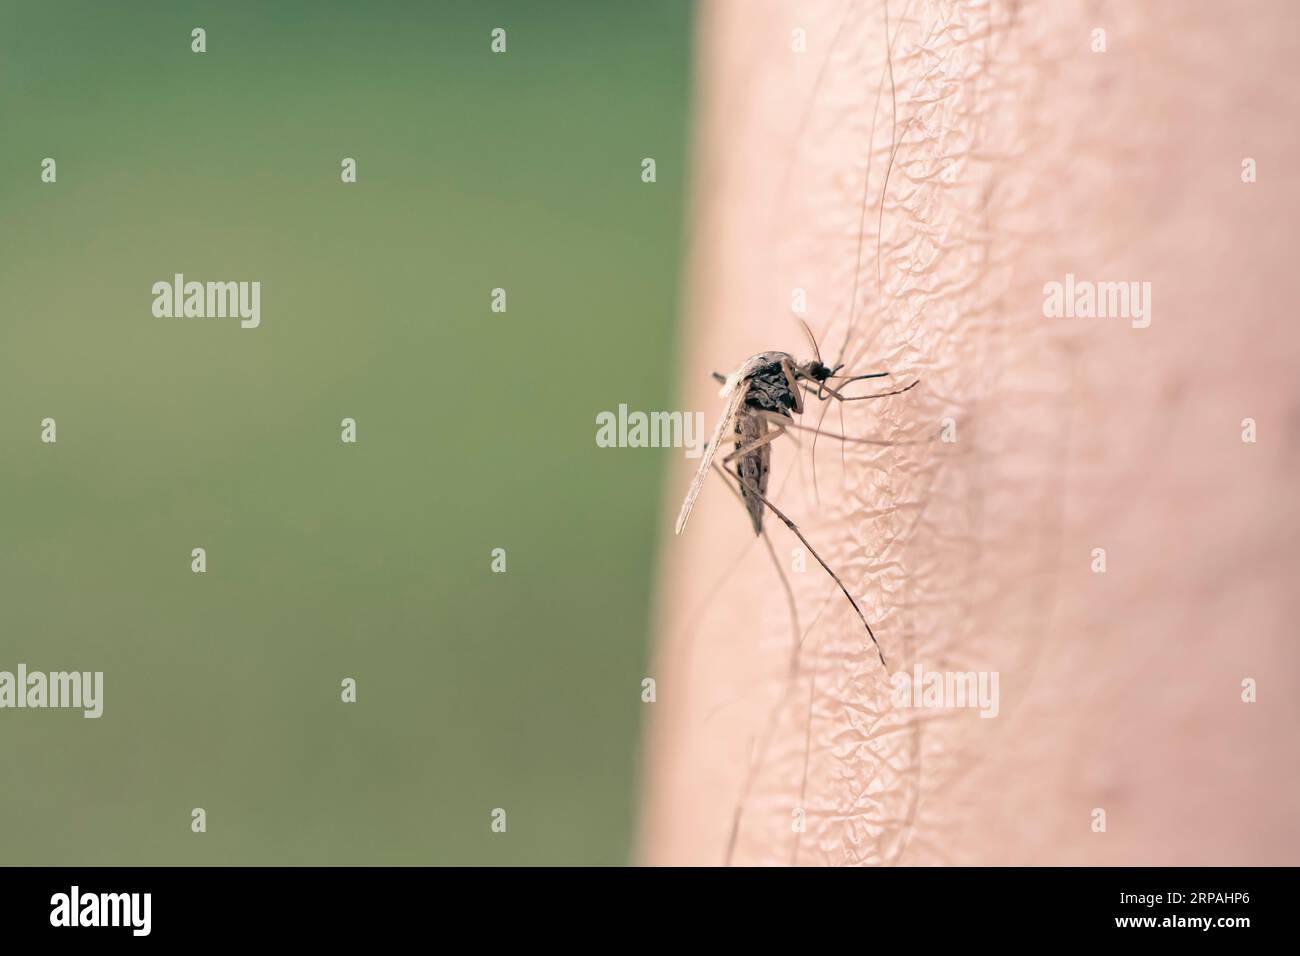 Mücke voller Blut. Eine Mücke saugt Blut aus einem menschlichen Körper. Makrofoto einer Mücke am Arm Stockfoto